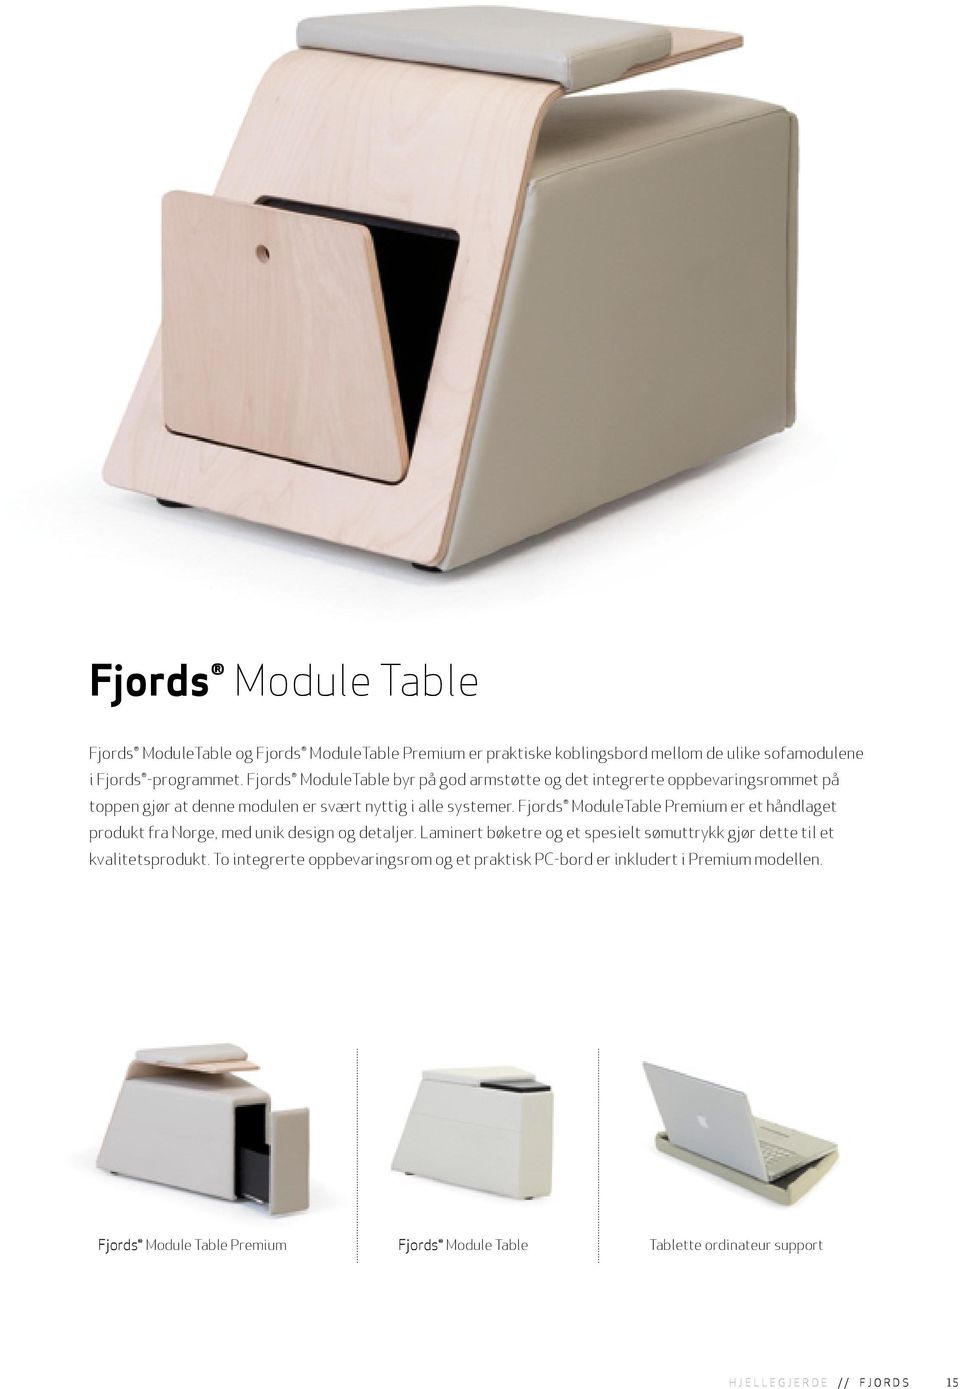 Fjords ModuleTable Premium er et håndlaget produkt fra Norge, med unik design og detaljer.